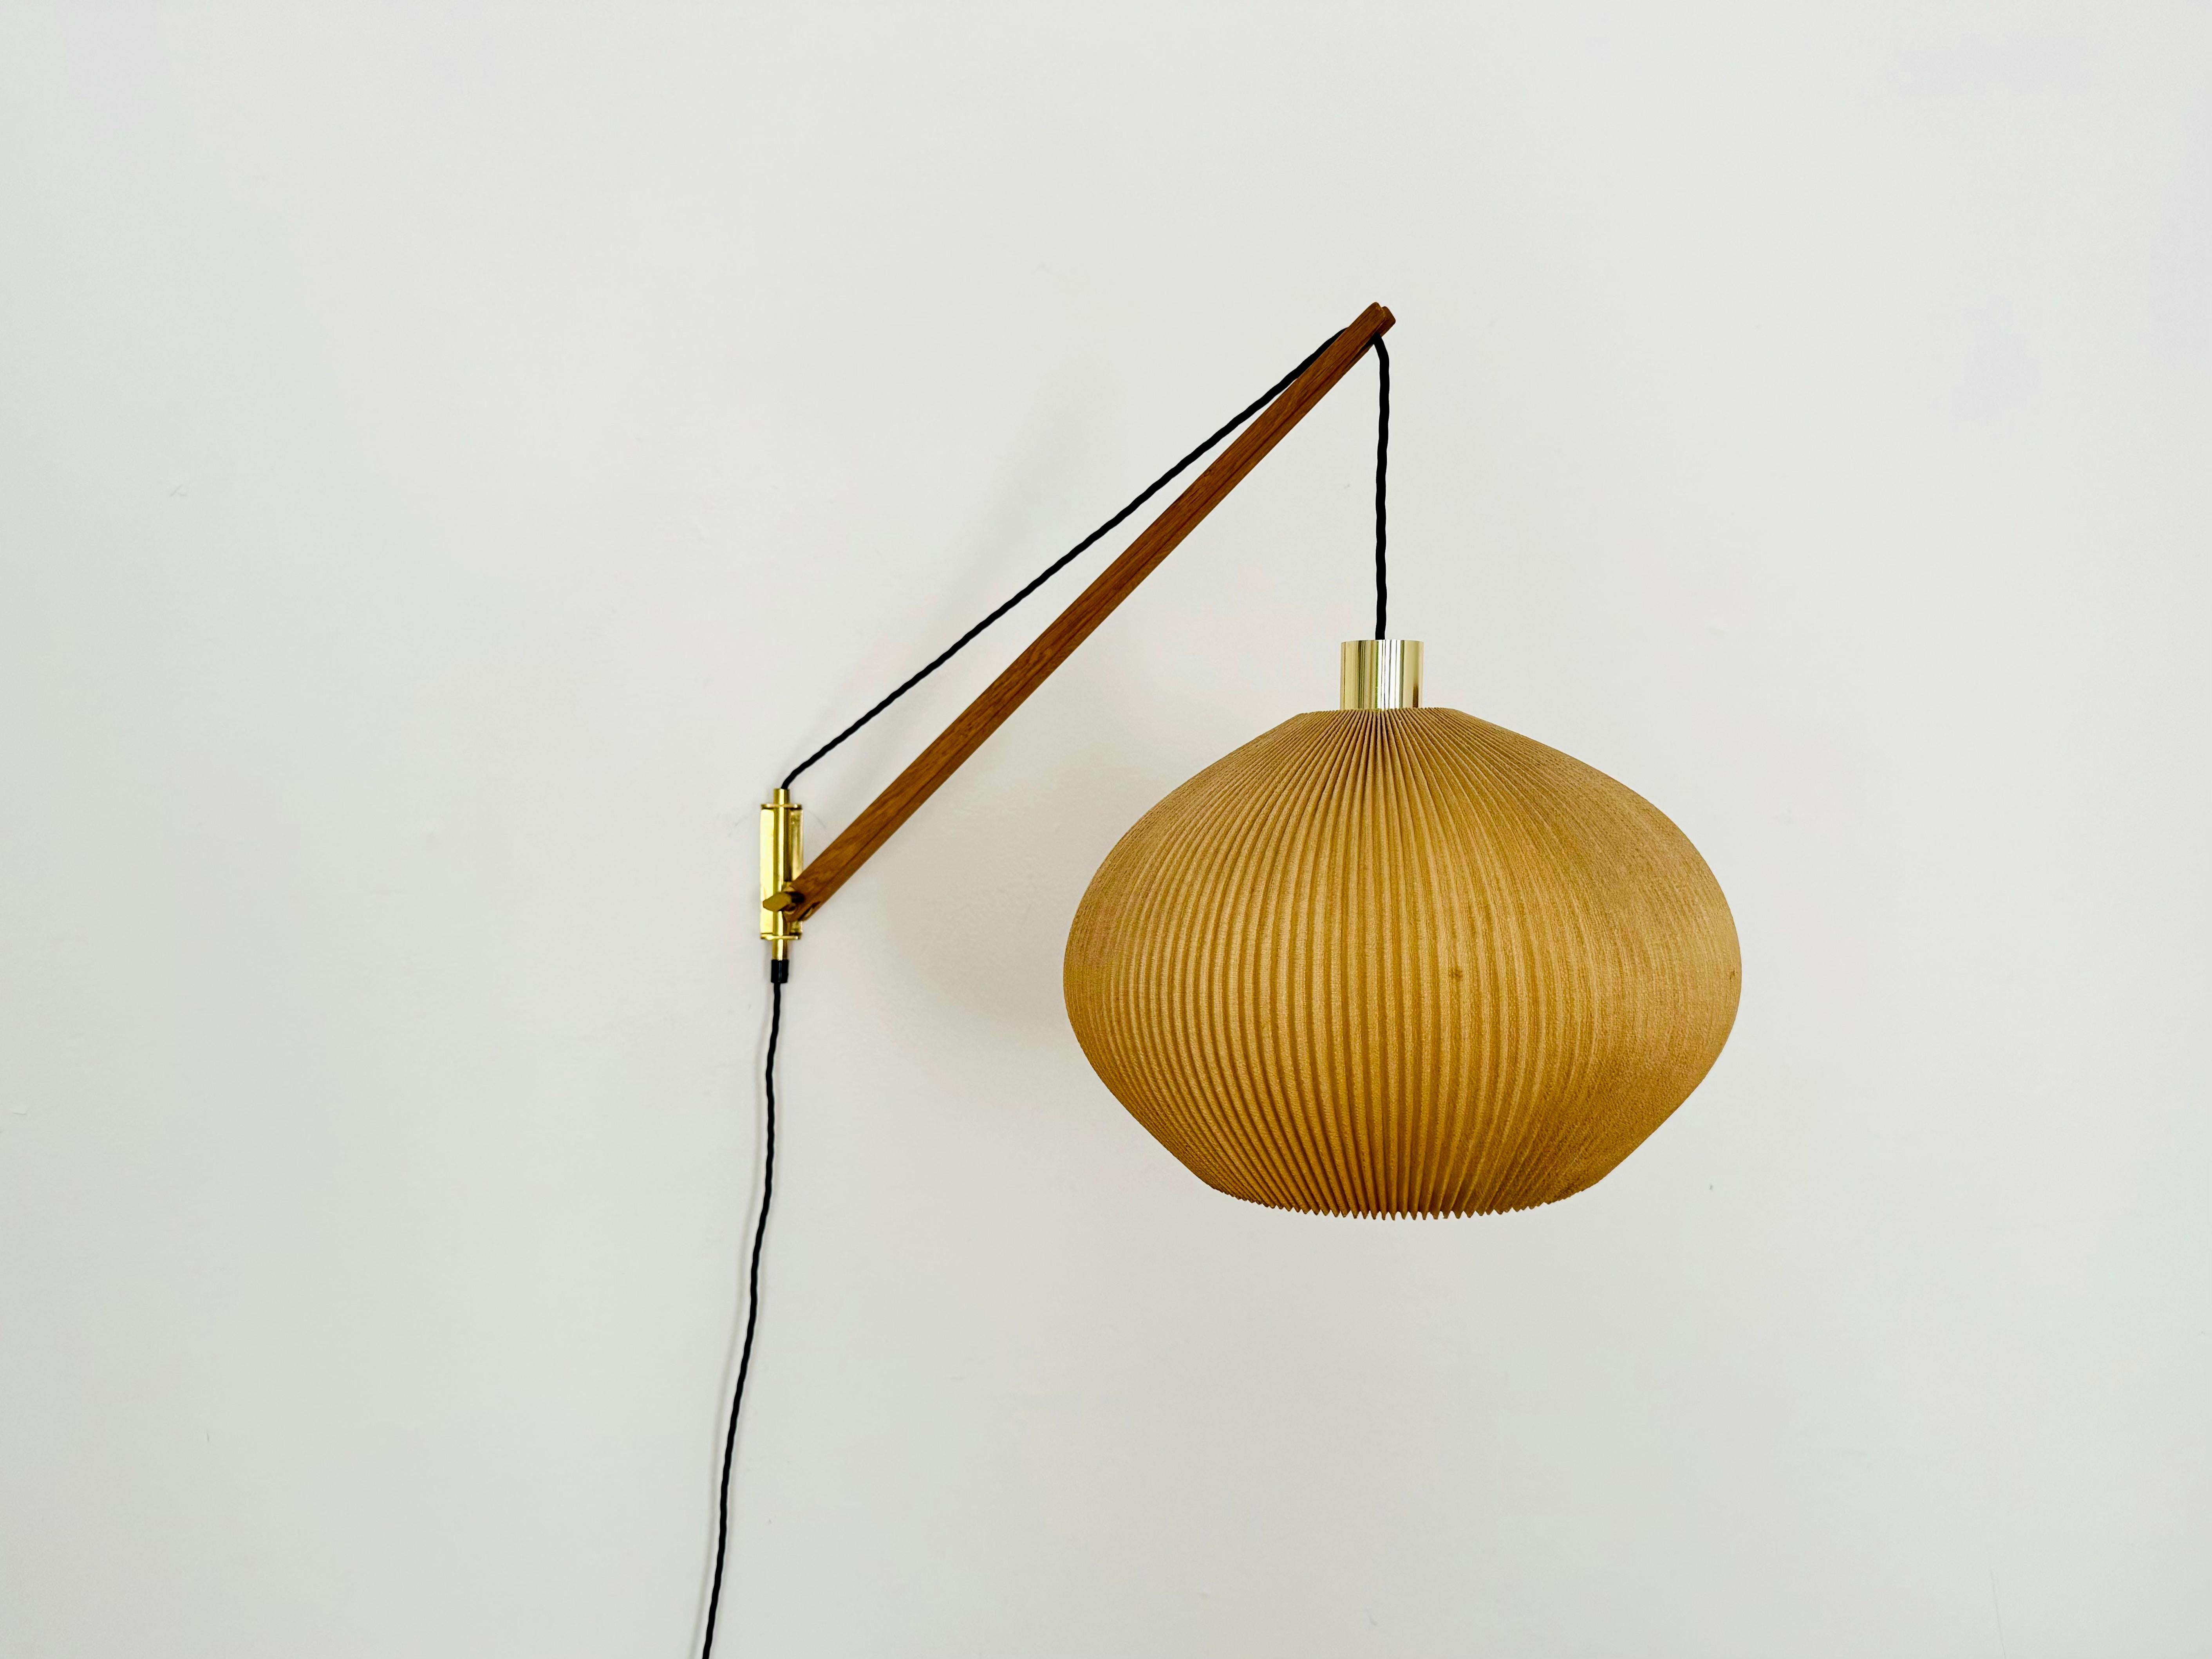 Wunderschöne plissierte Wandlampe aus den 1950er Jahren.
Großartiges und außergewöhnlich minimalistisches Design mit einem fantastisch eleganten Look.
Sehr schöner Schwenkarm aus Eichenholz.
Der Lampenschirm schafft eine sehr gemütliche